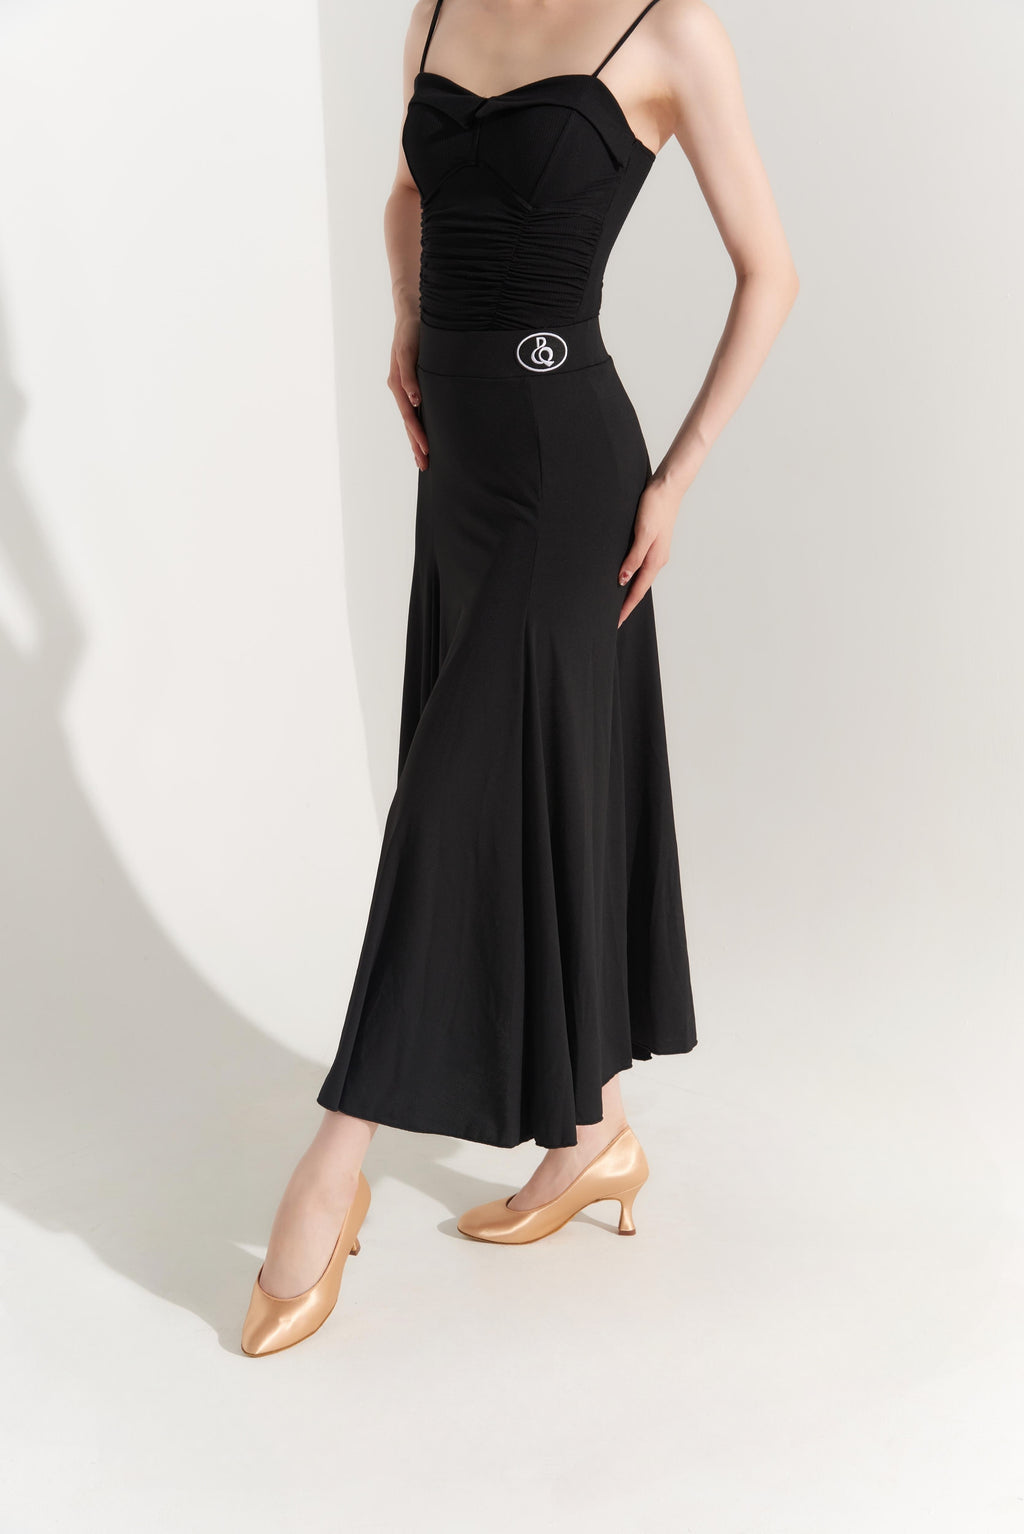 DQ-393 Dance Queen Black Godet Skirt